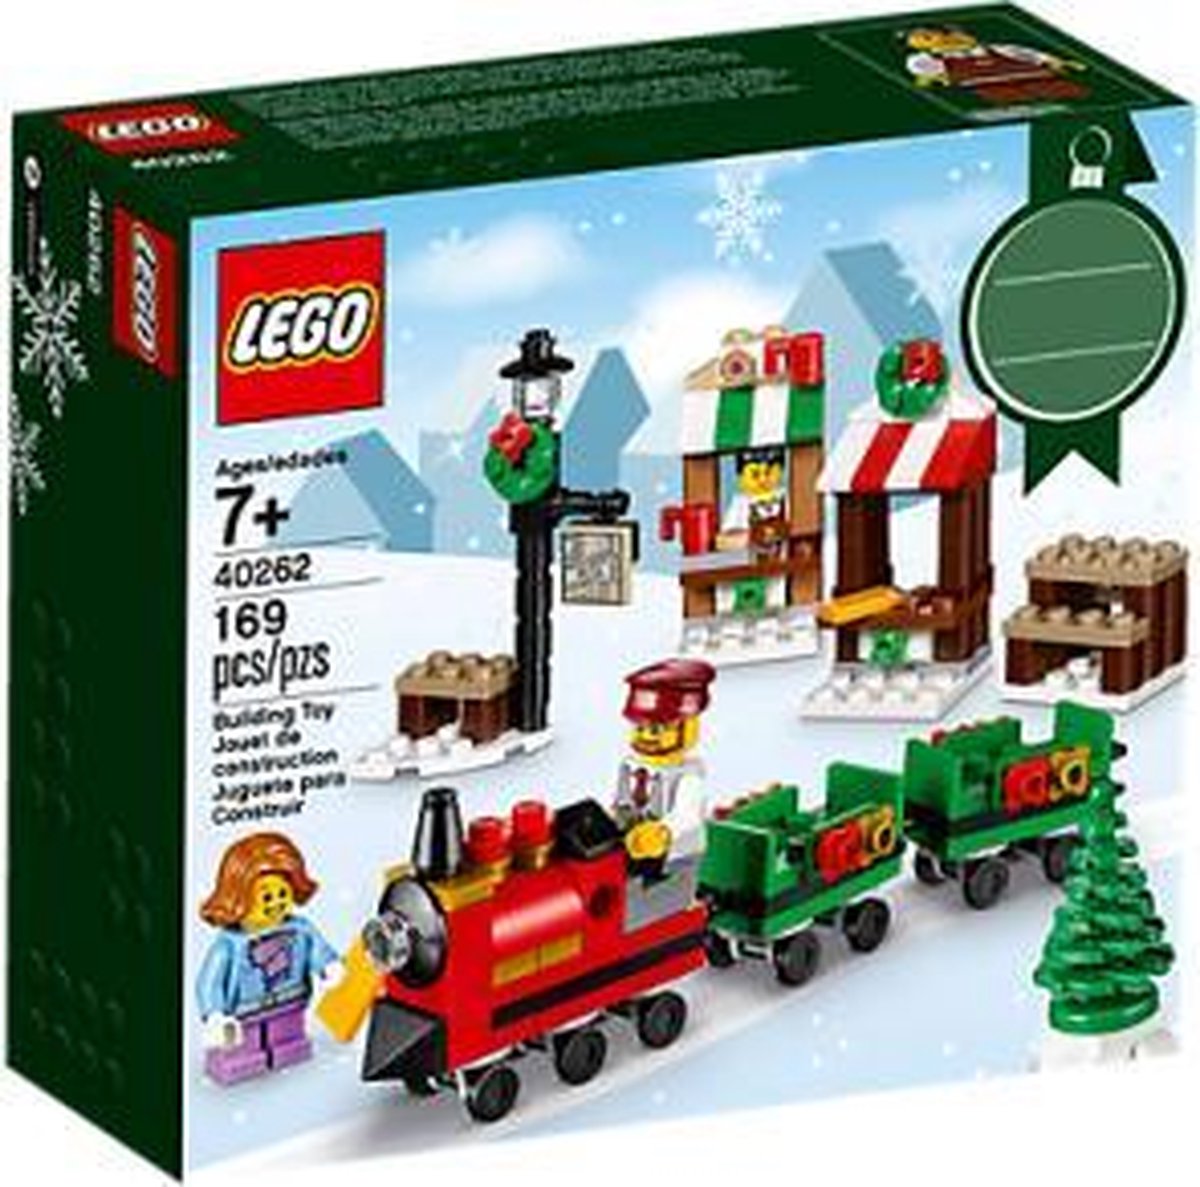 LEGO Le train de Noël - 40262 | bol.com